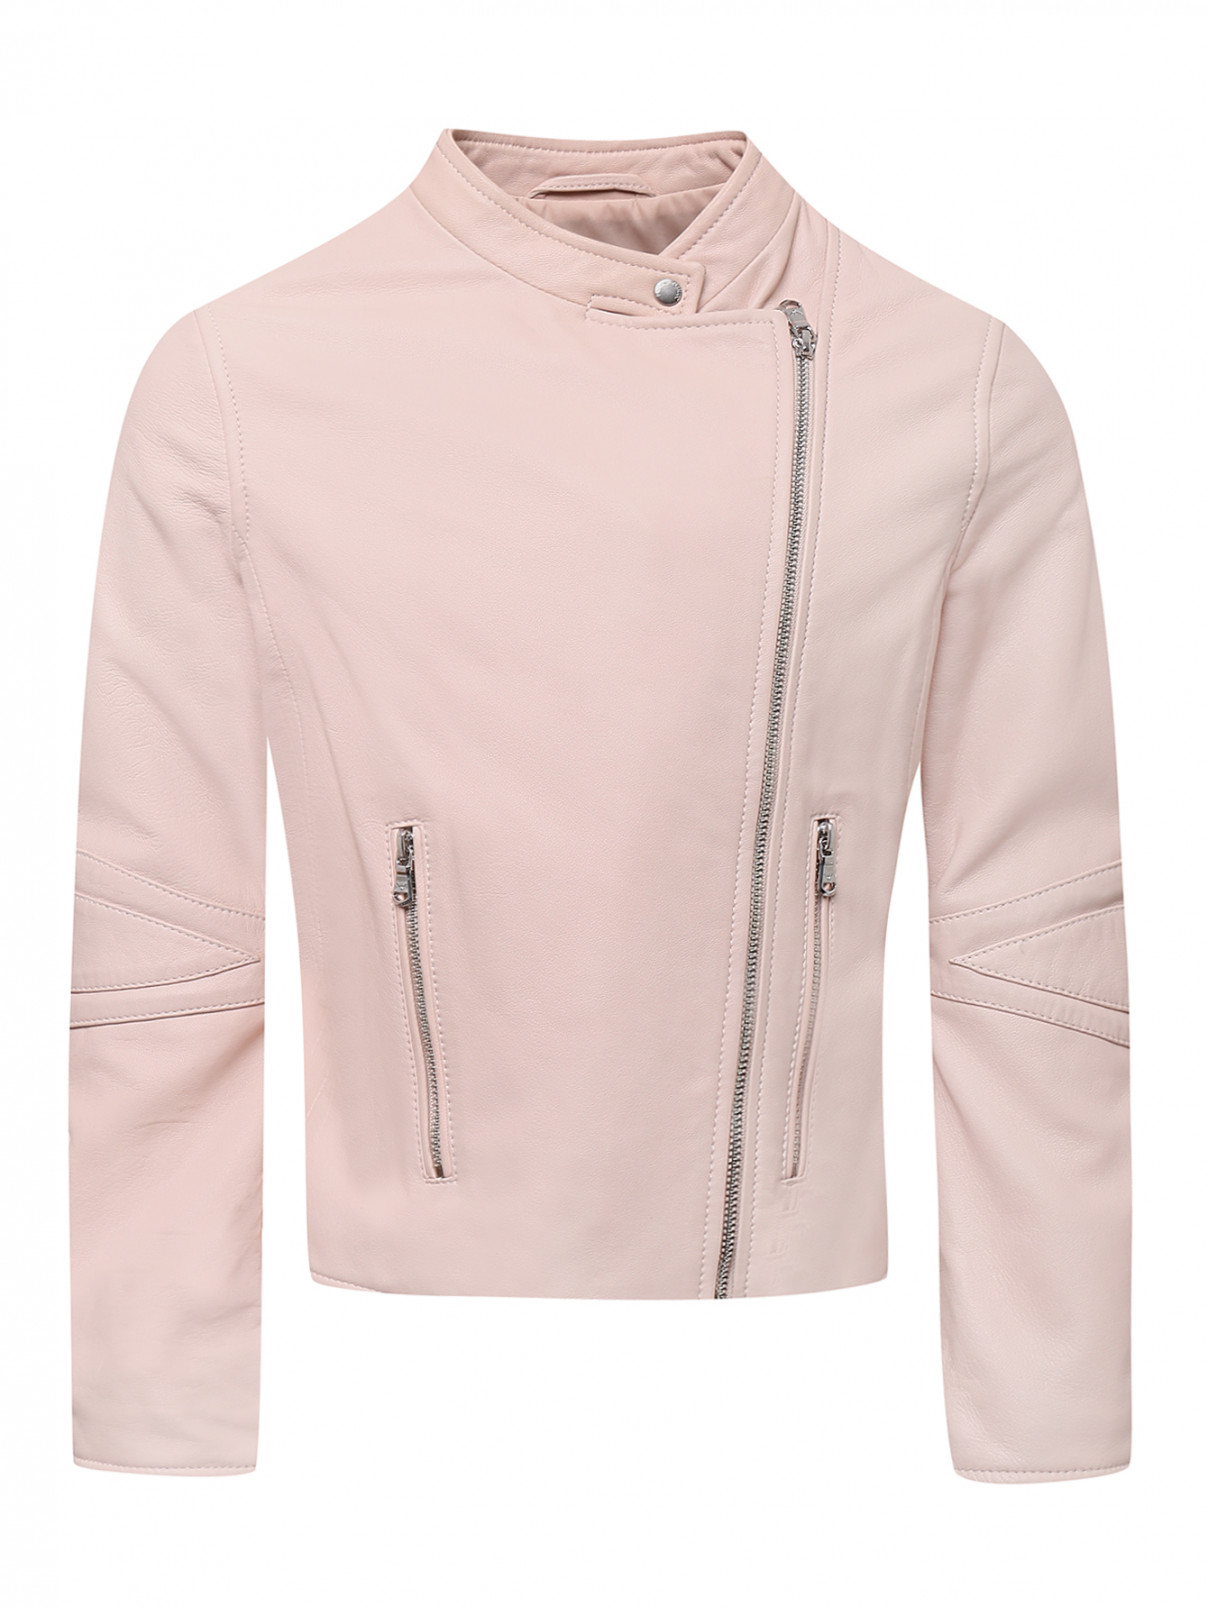 Куртка-косуха из кожи Emporio Armani  –  Общий вид  – Цвет:  Розовый